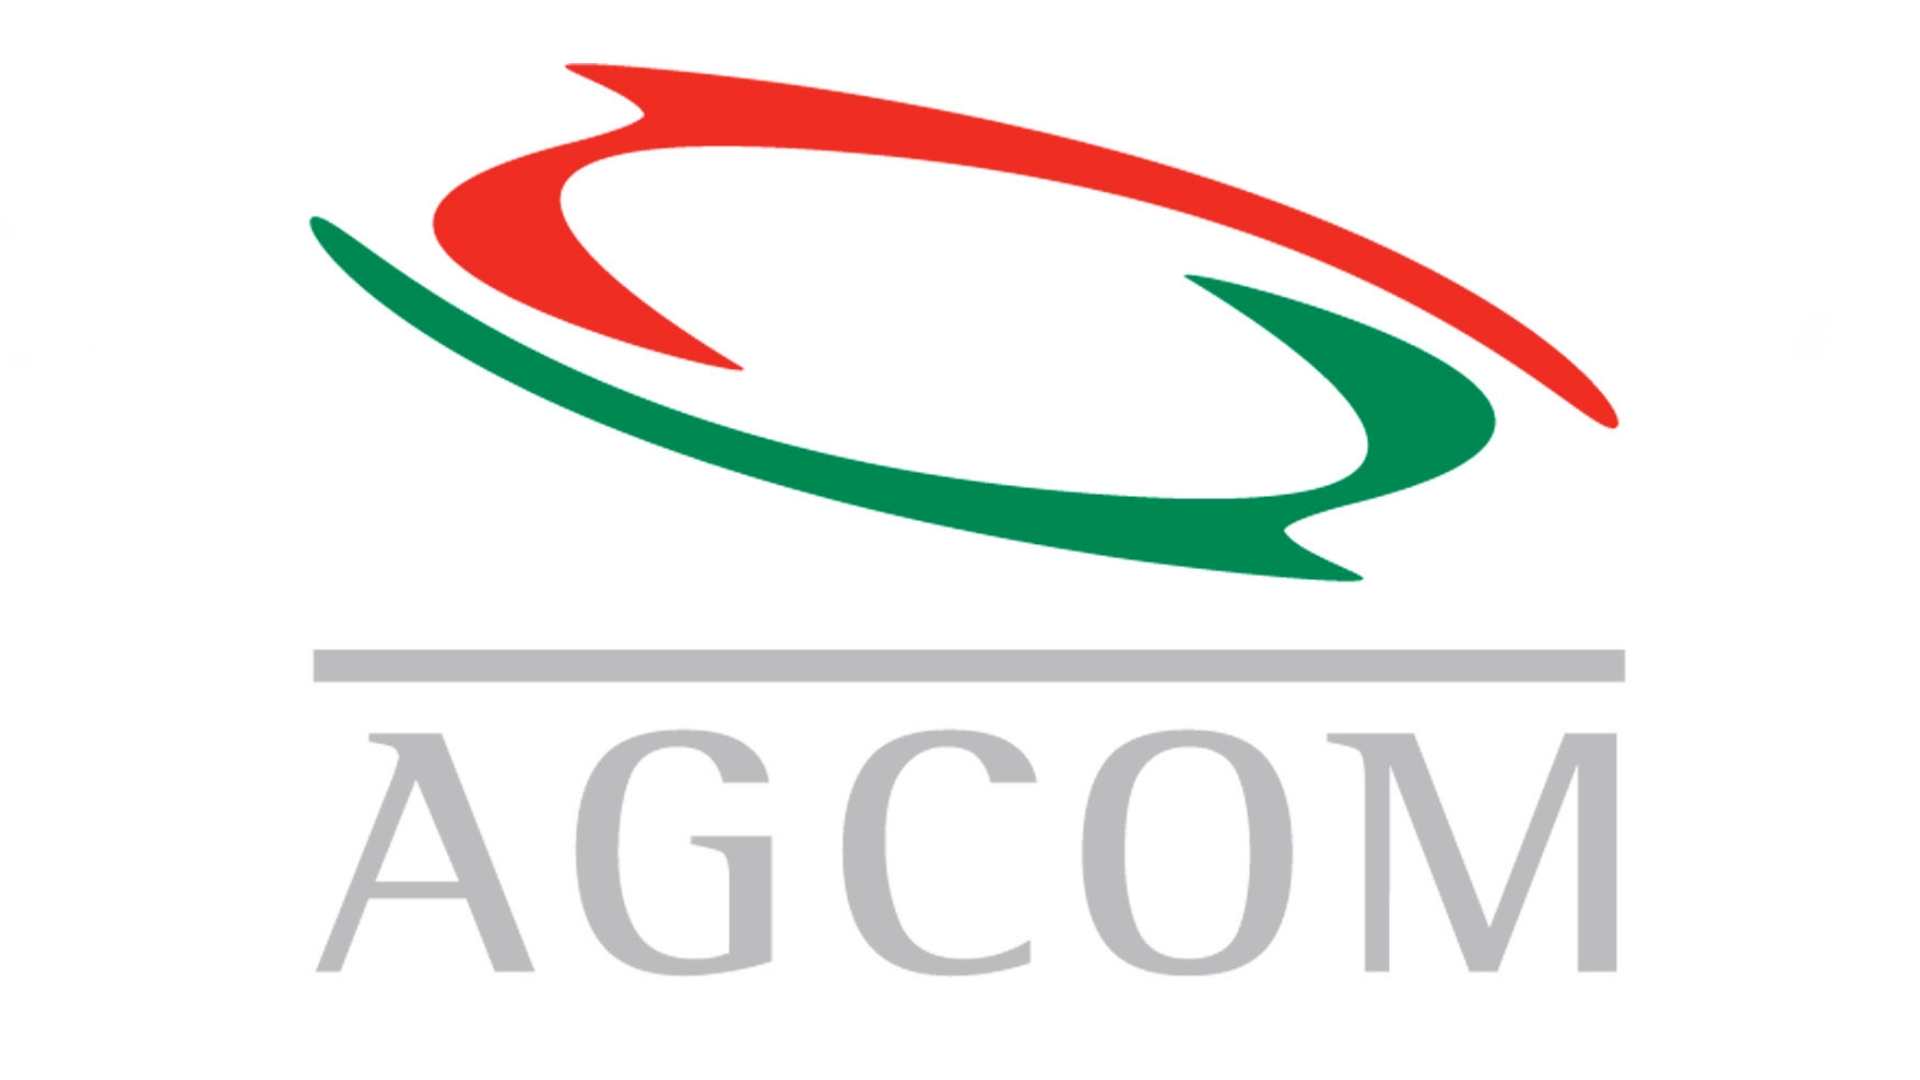 FIAP AGCOM v3